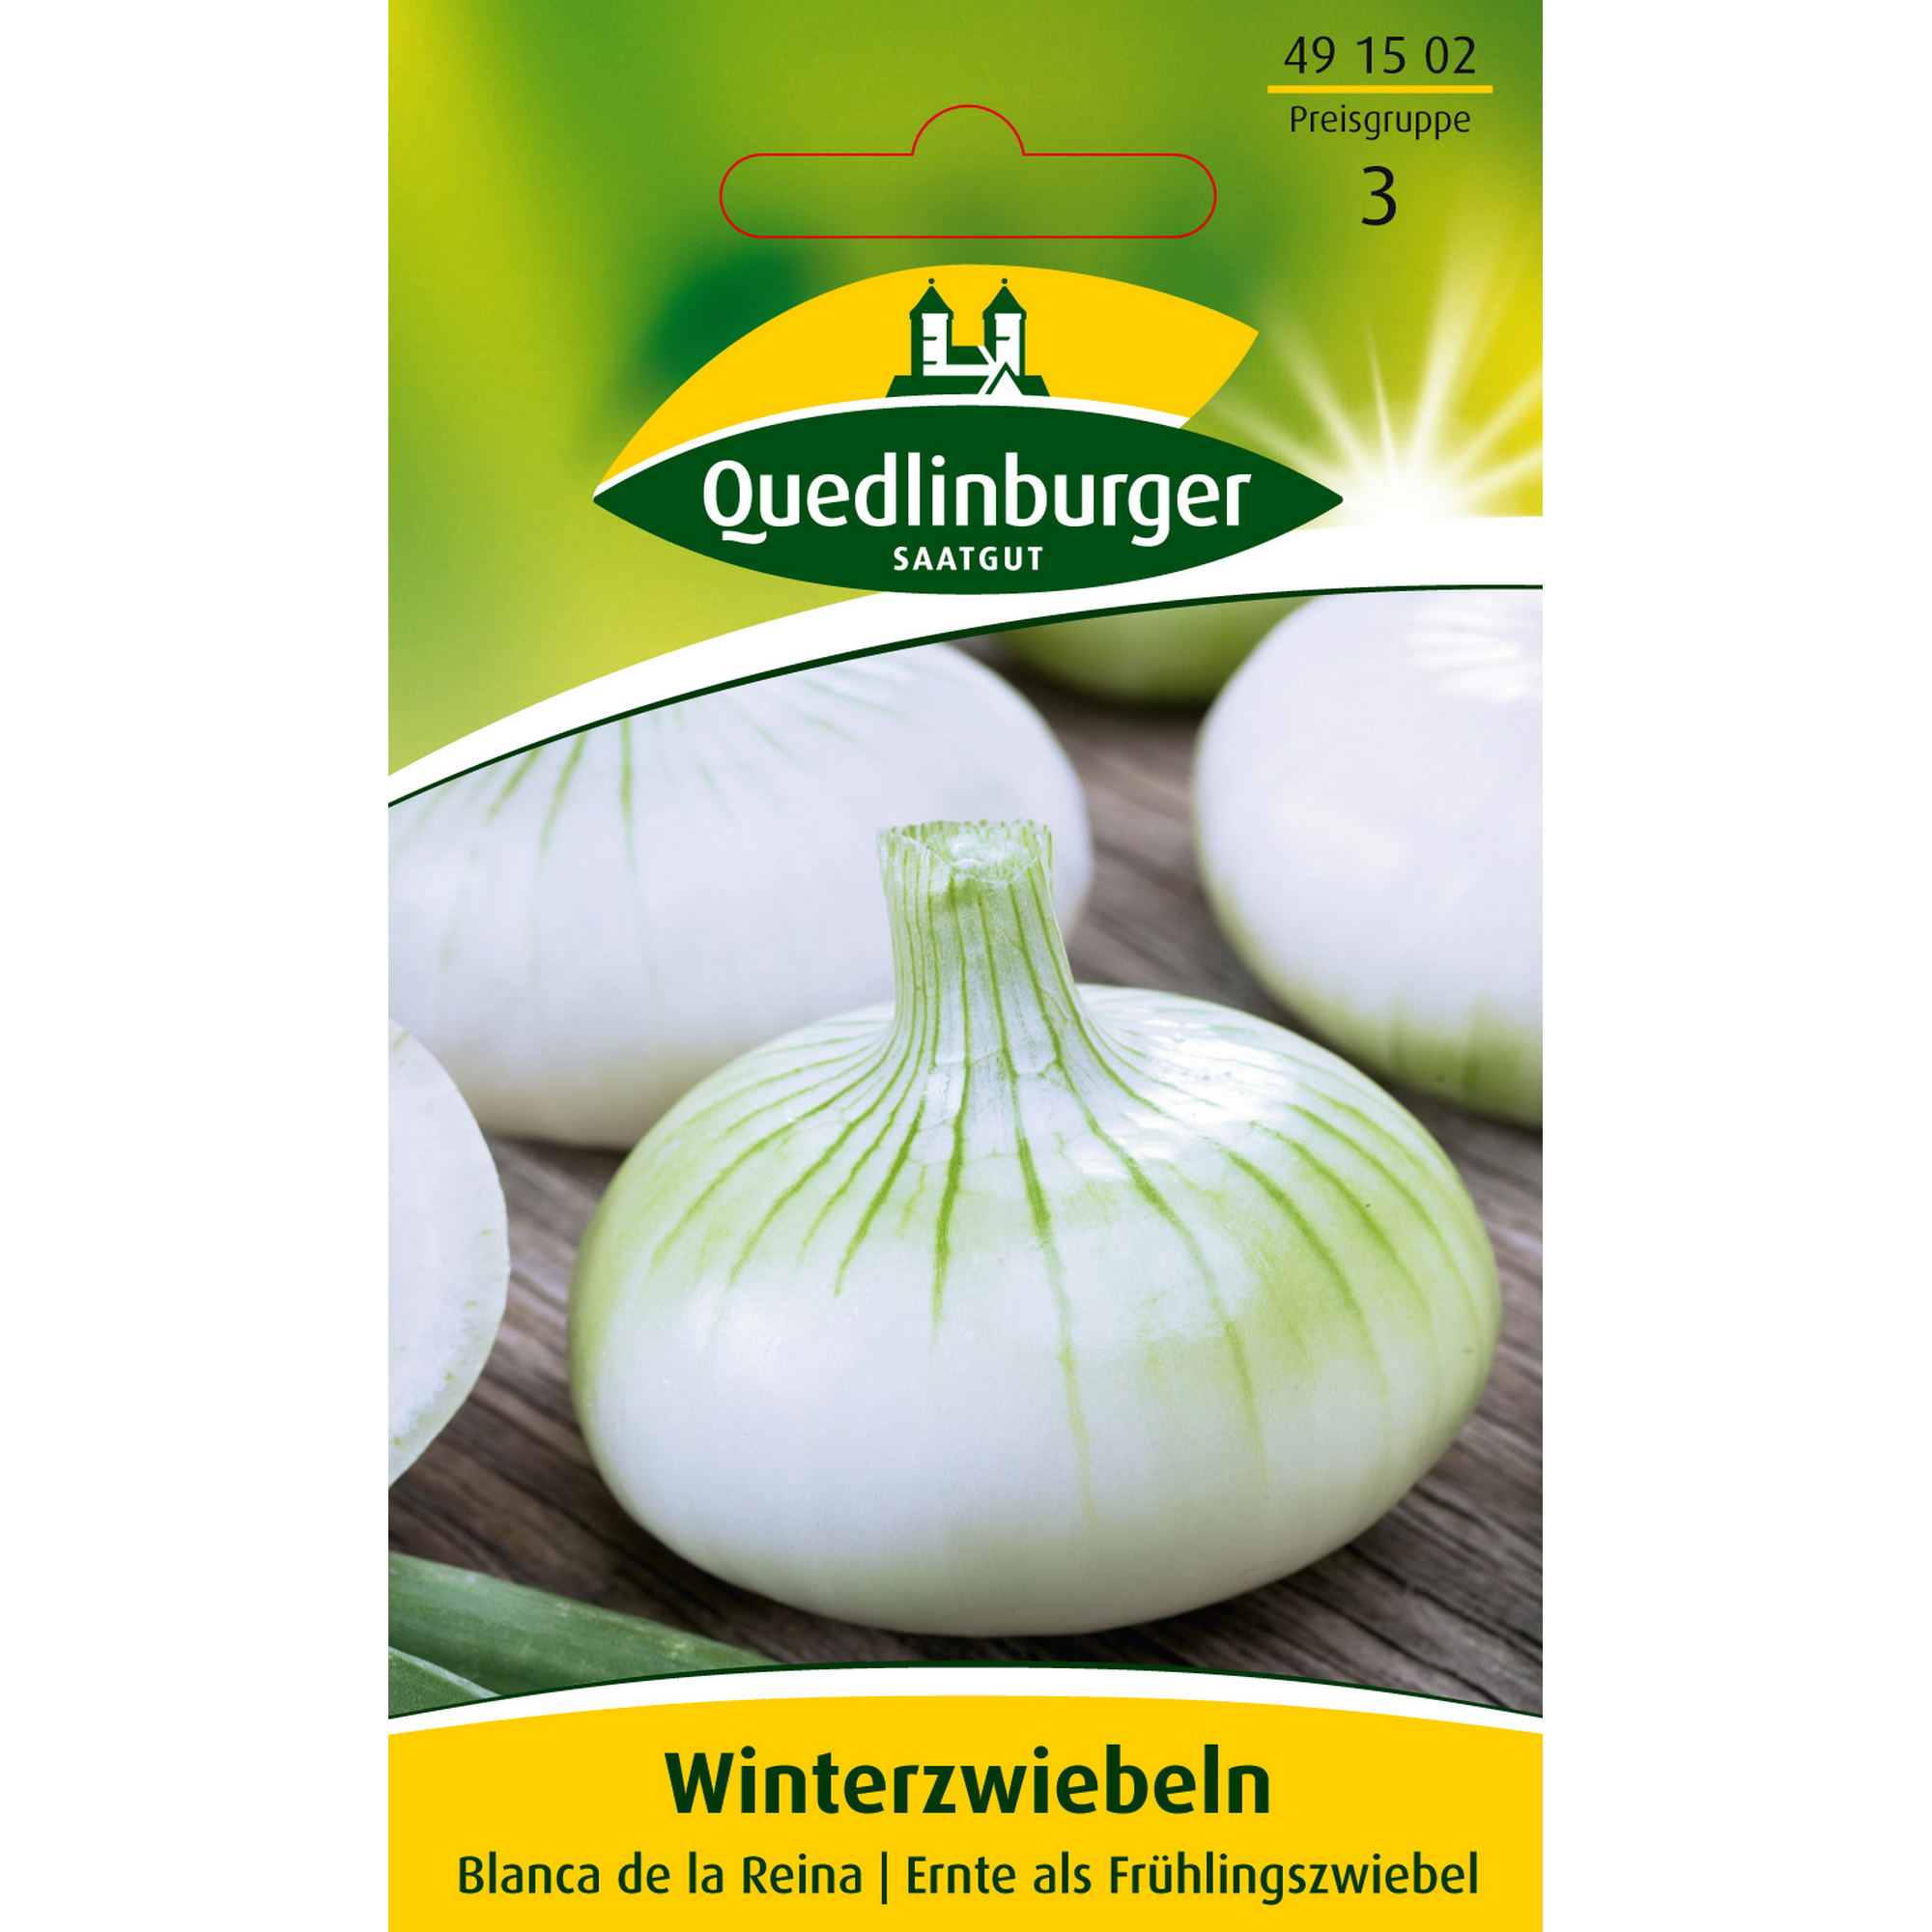 Winterzwiebel 'Blanca de la Reina' + product picture